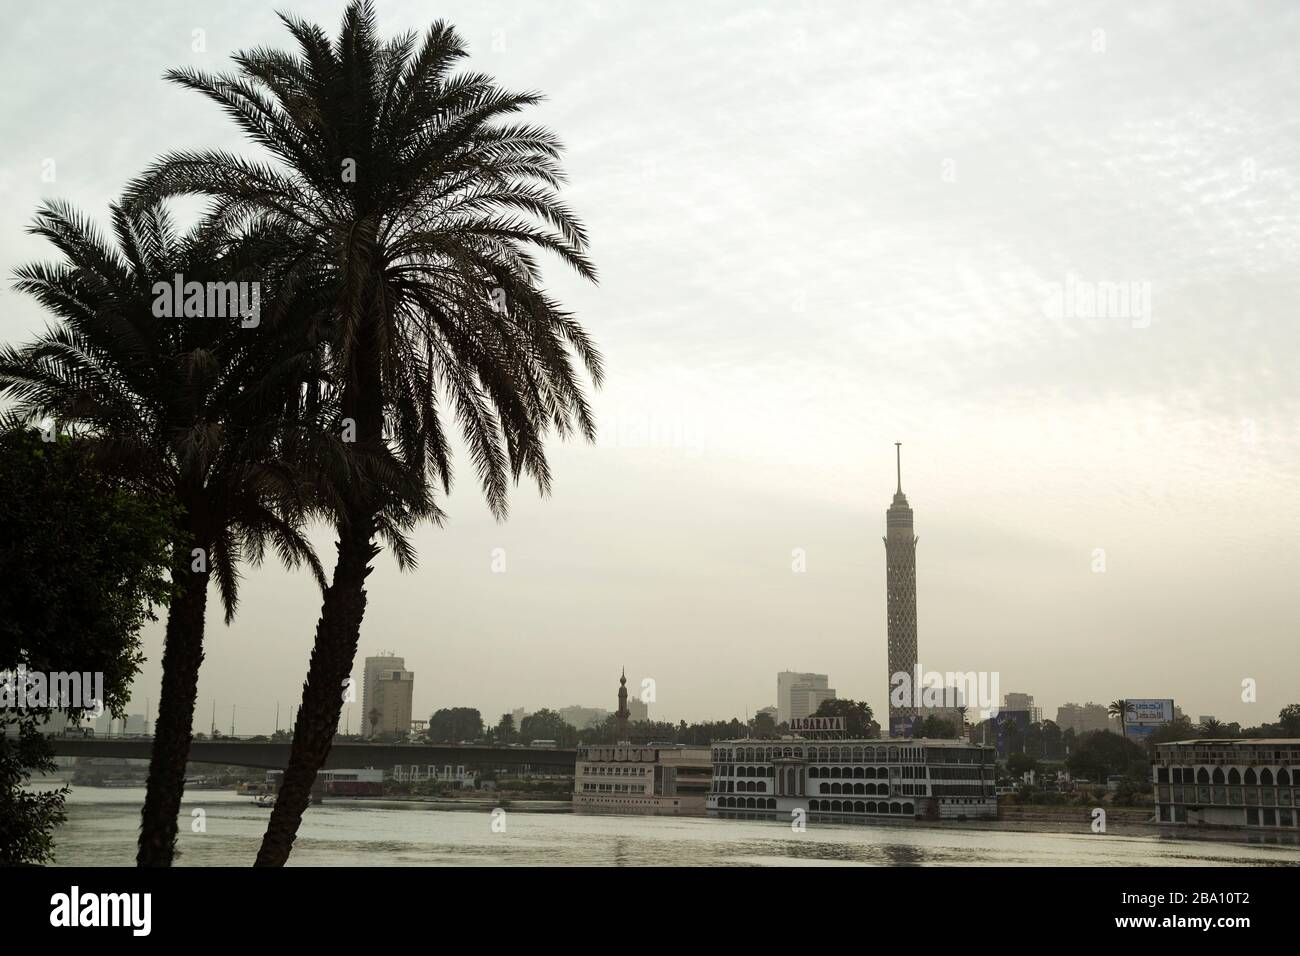 Palmiers près du Nil au Caire, Egypte. La Tour du Caire, connue sous le nom de Pineapple de Nasser, domine le paysage urbain. Banque D'Images